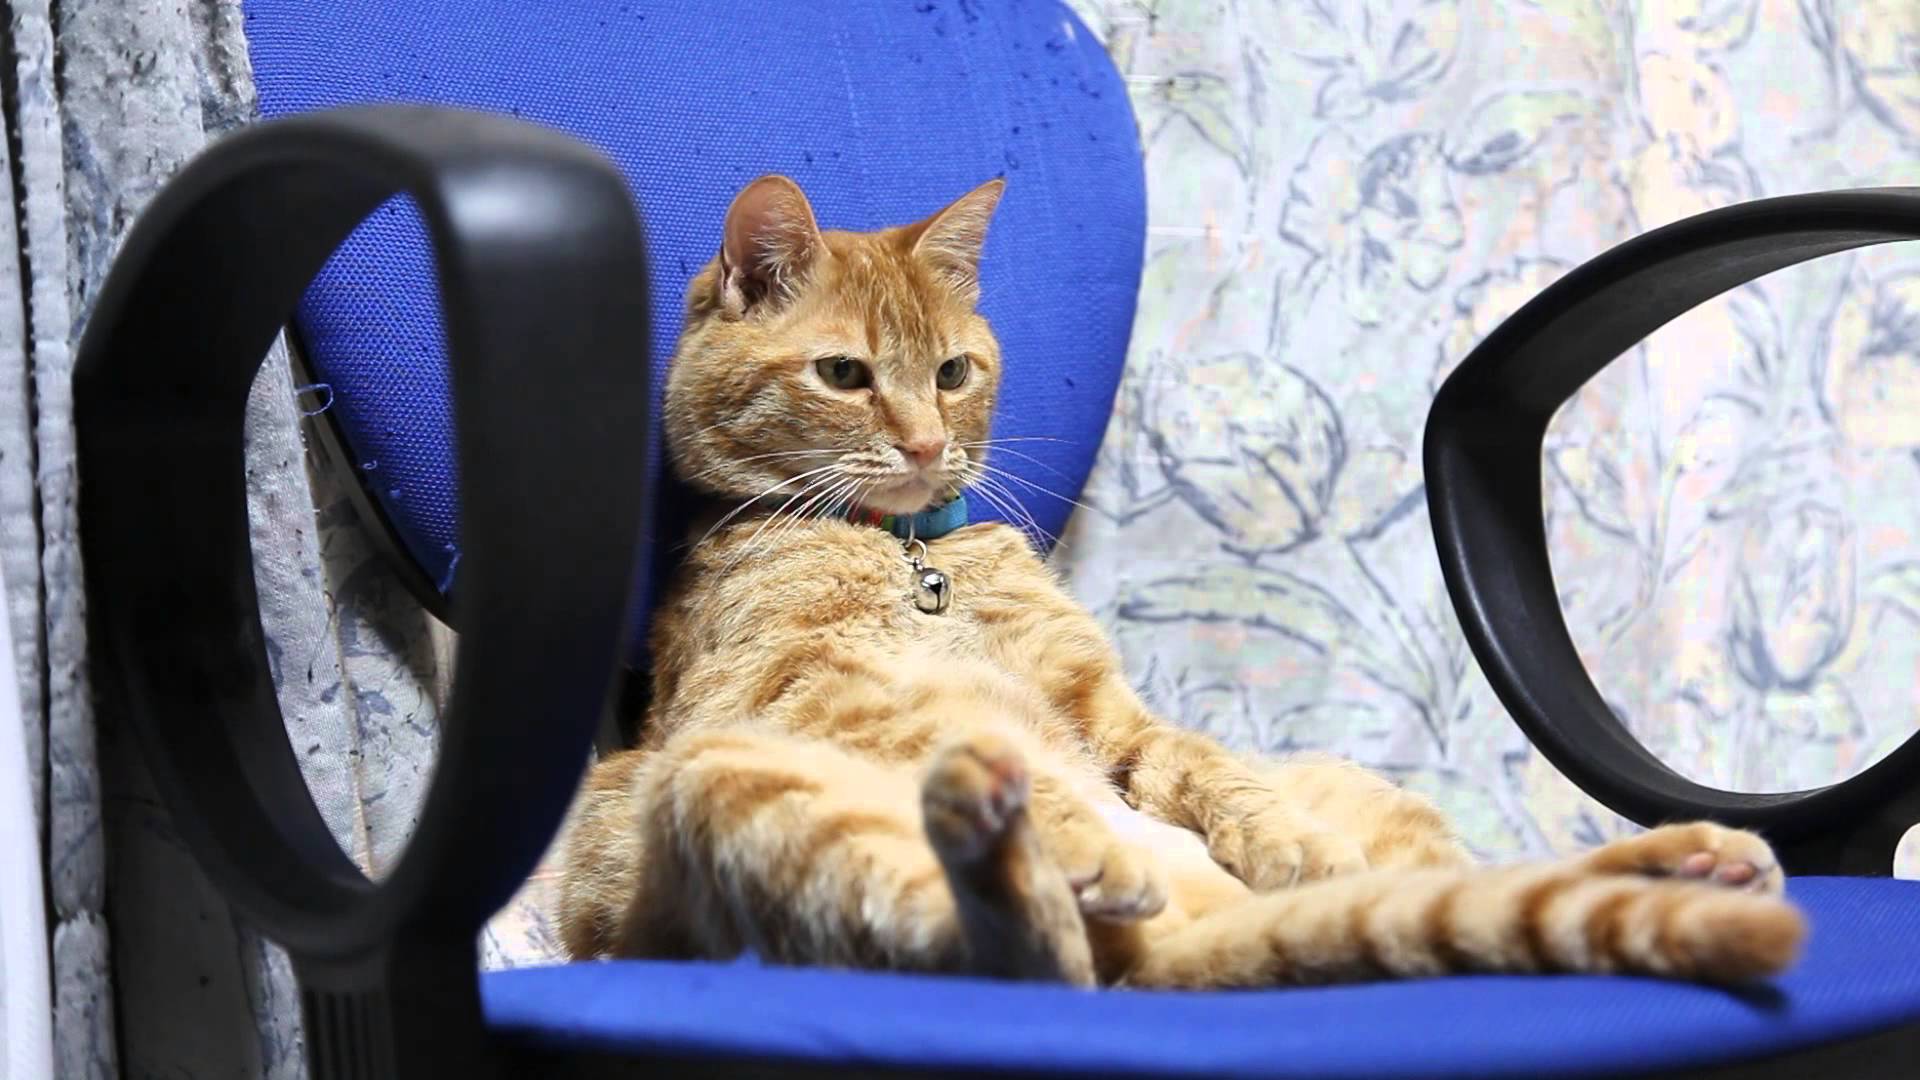 椅子に座る猫 Cat sitting in a chair 2014#6 | Kitteh Fun | Pinterest ...